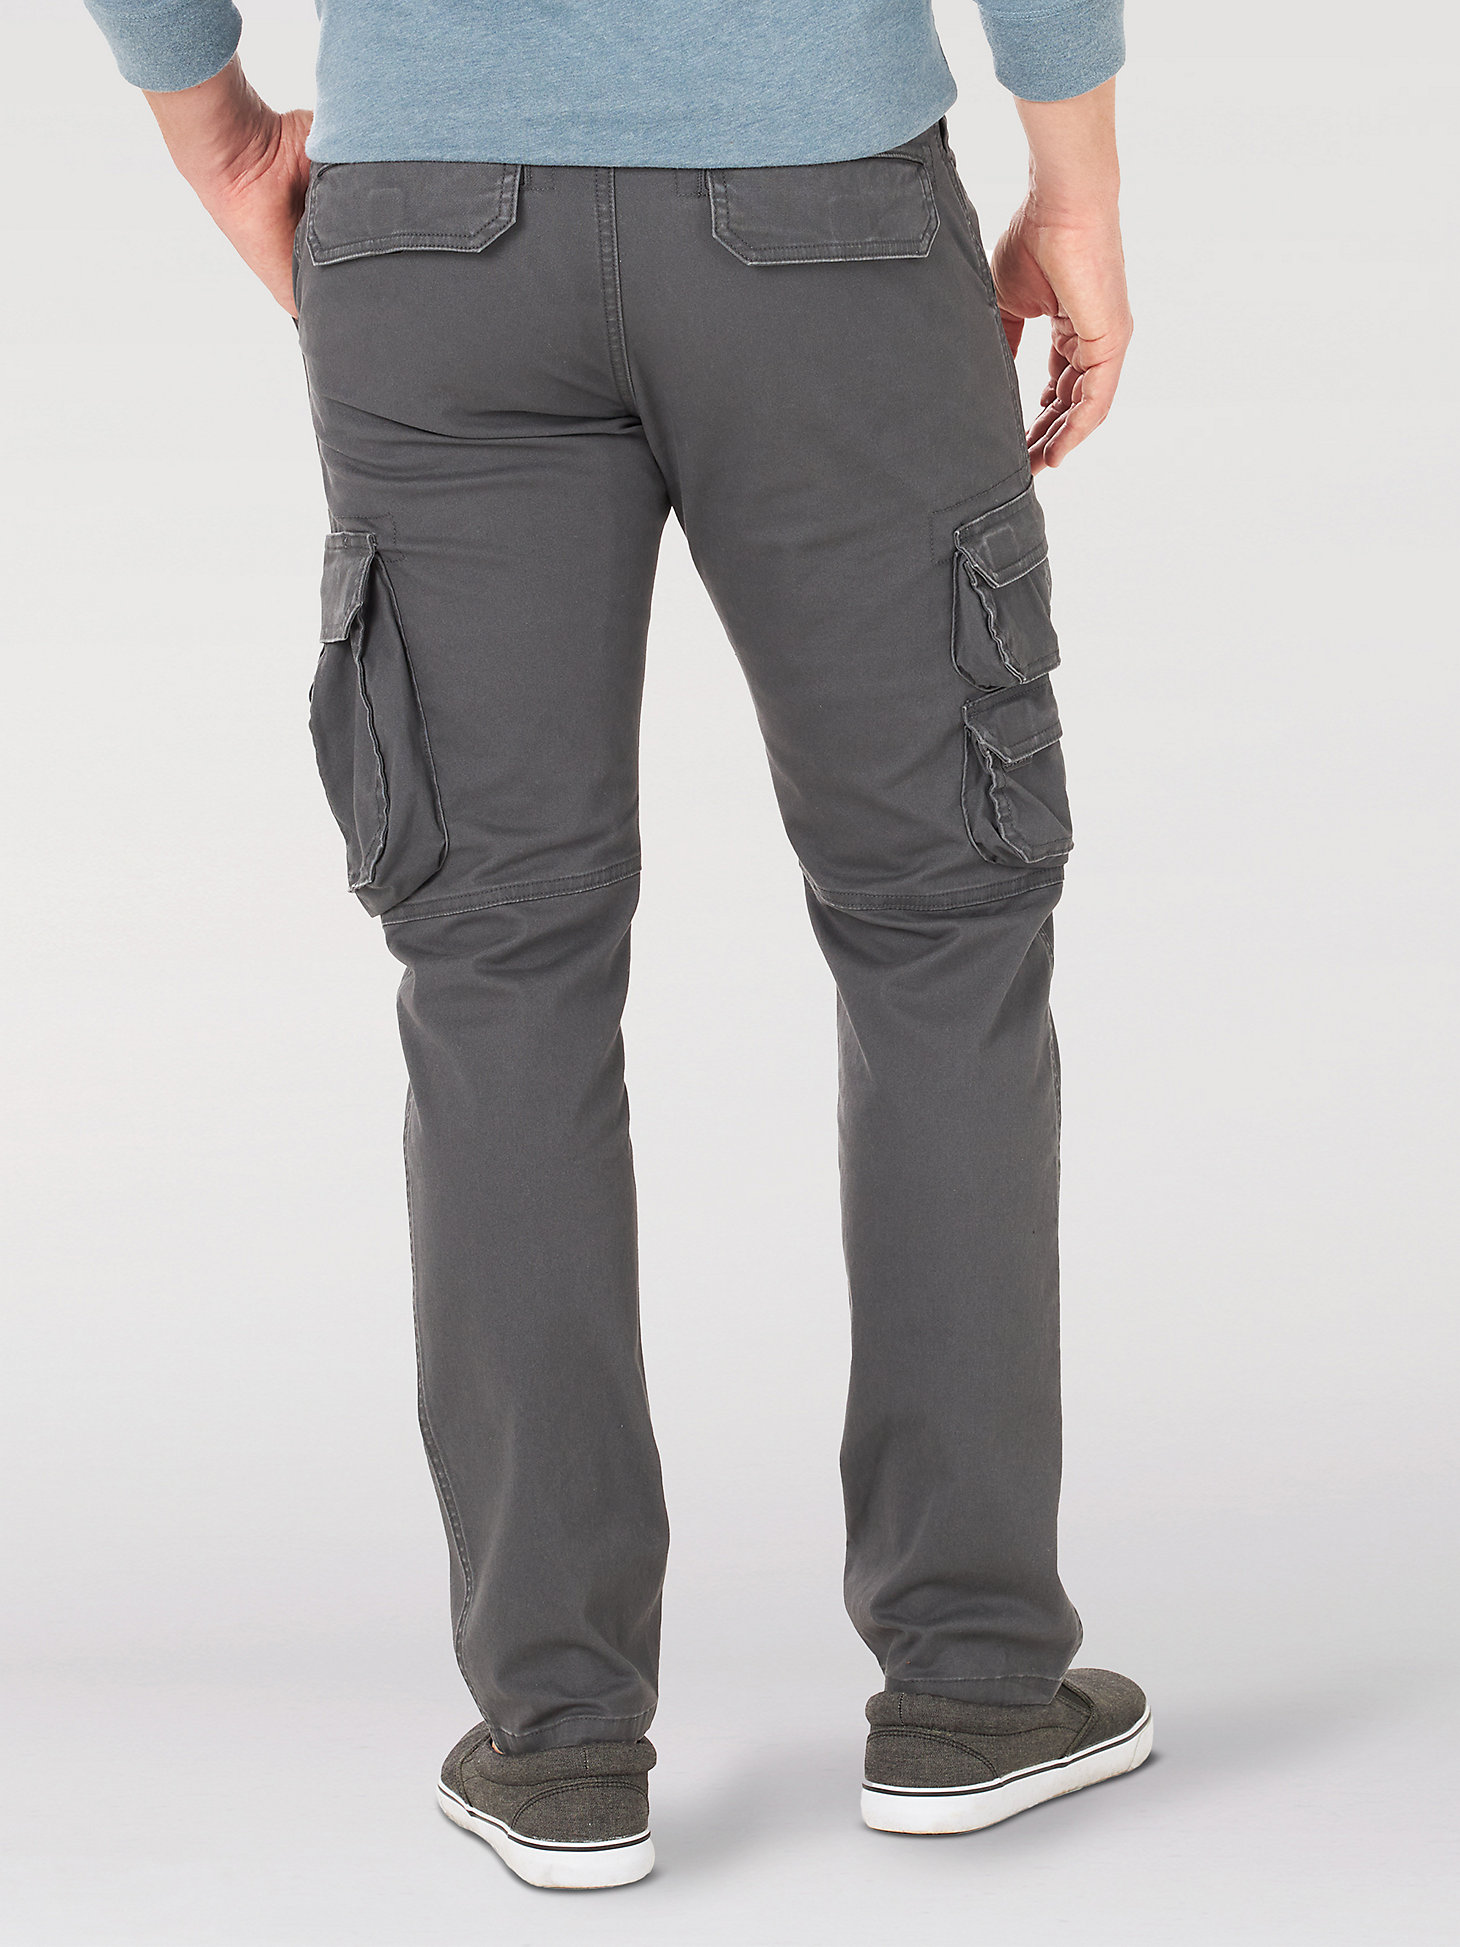 Men's Wrangler® Flex Tapered Cargo Pant in Asphalt alternative view 1